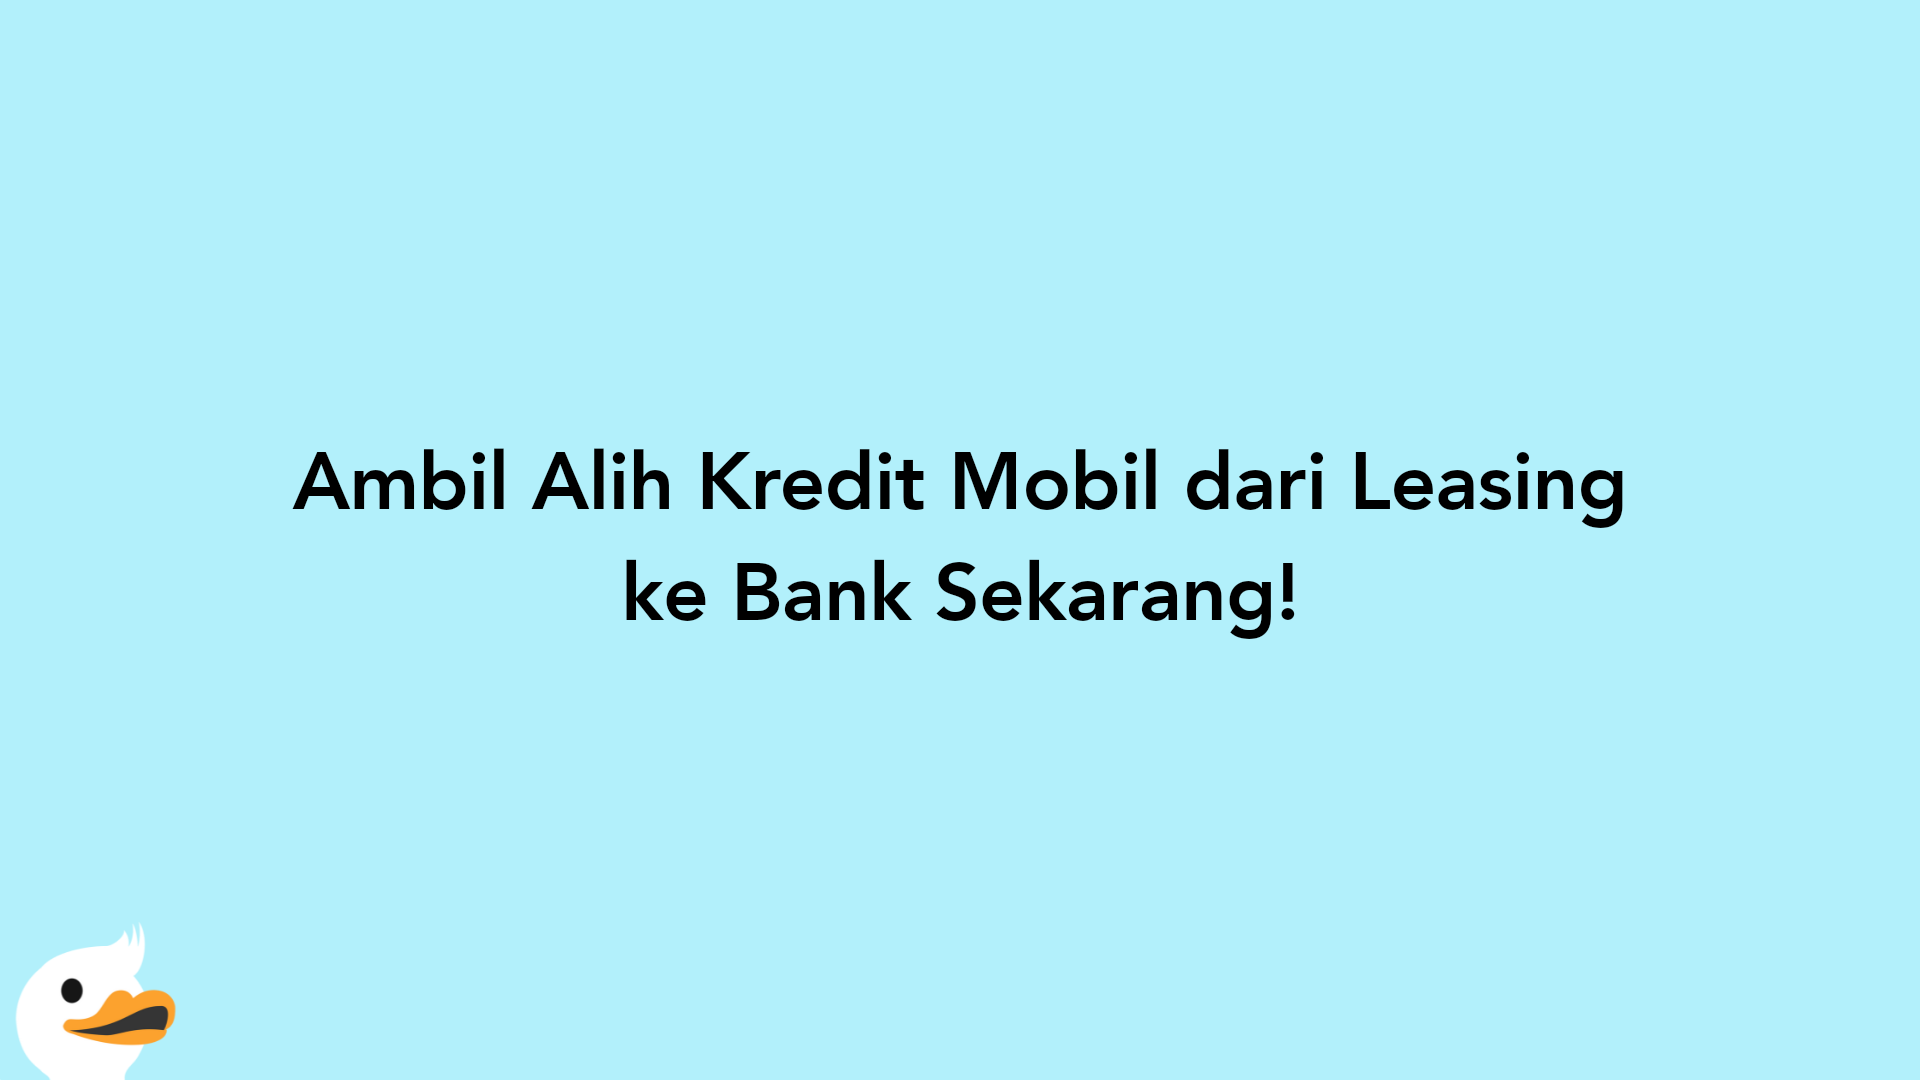 Ambil Alih Kredit Mobil dari Leasing ke Bank Sekarang!